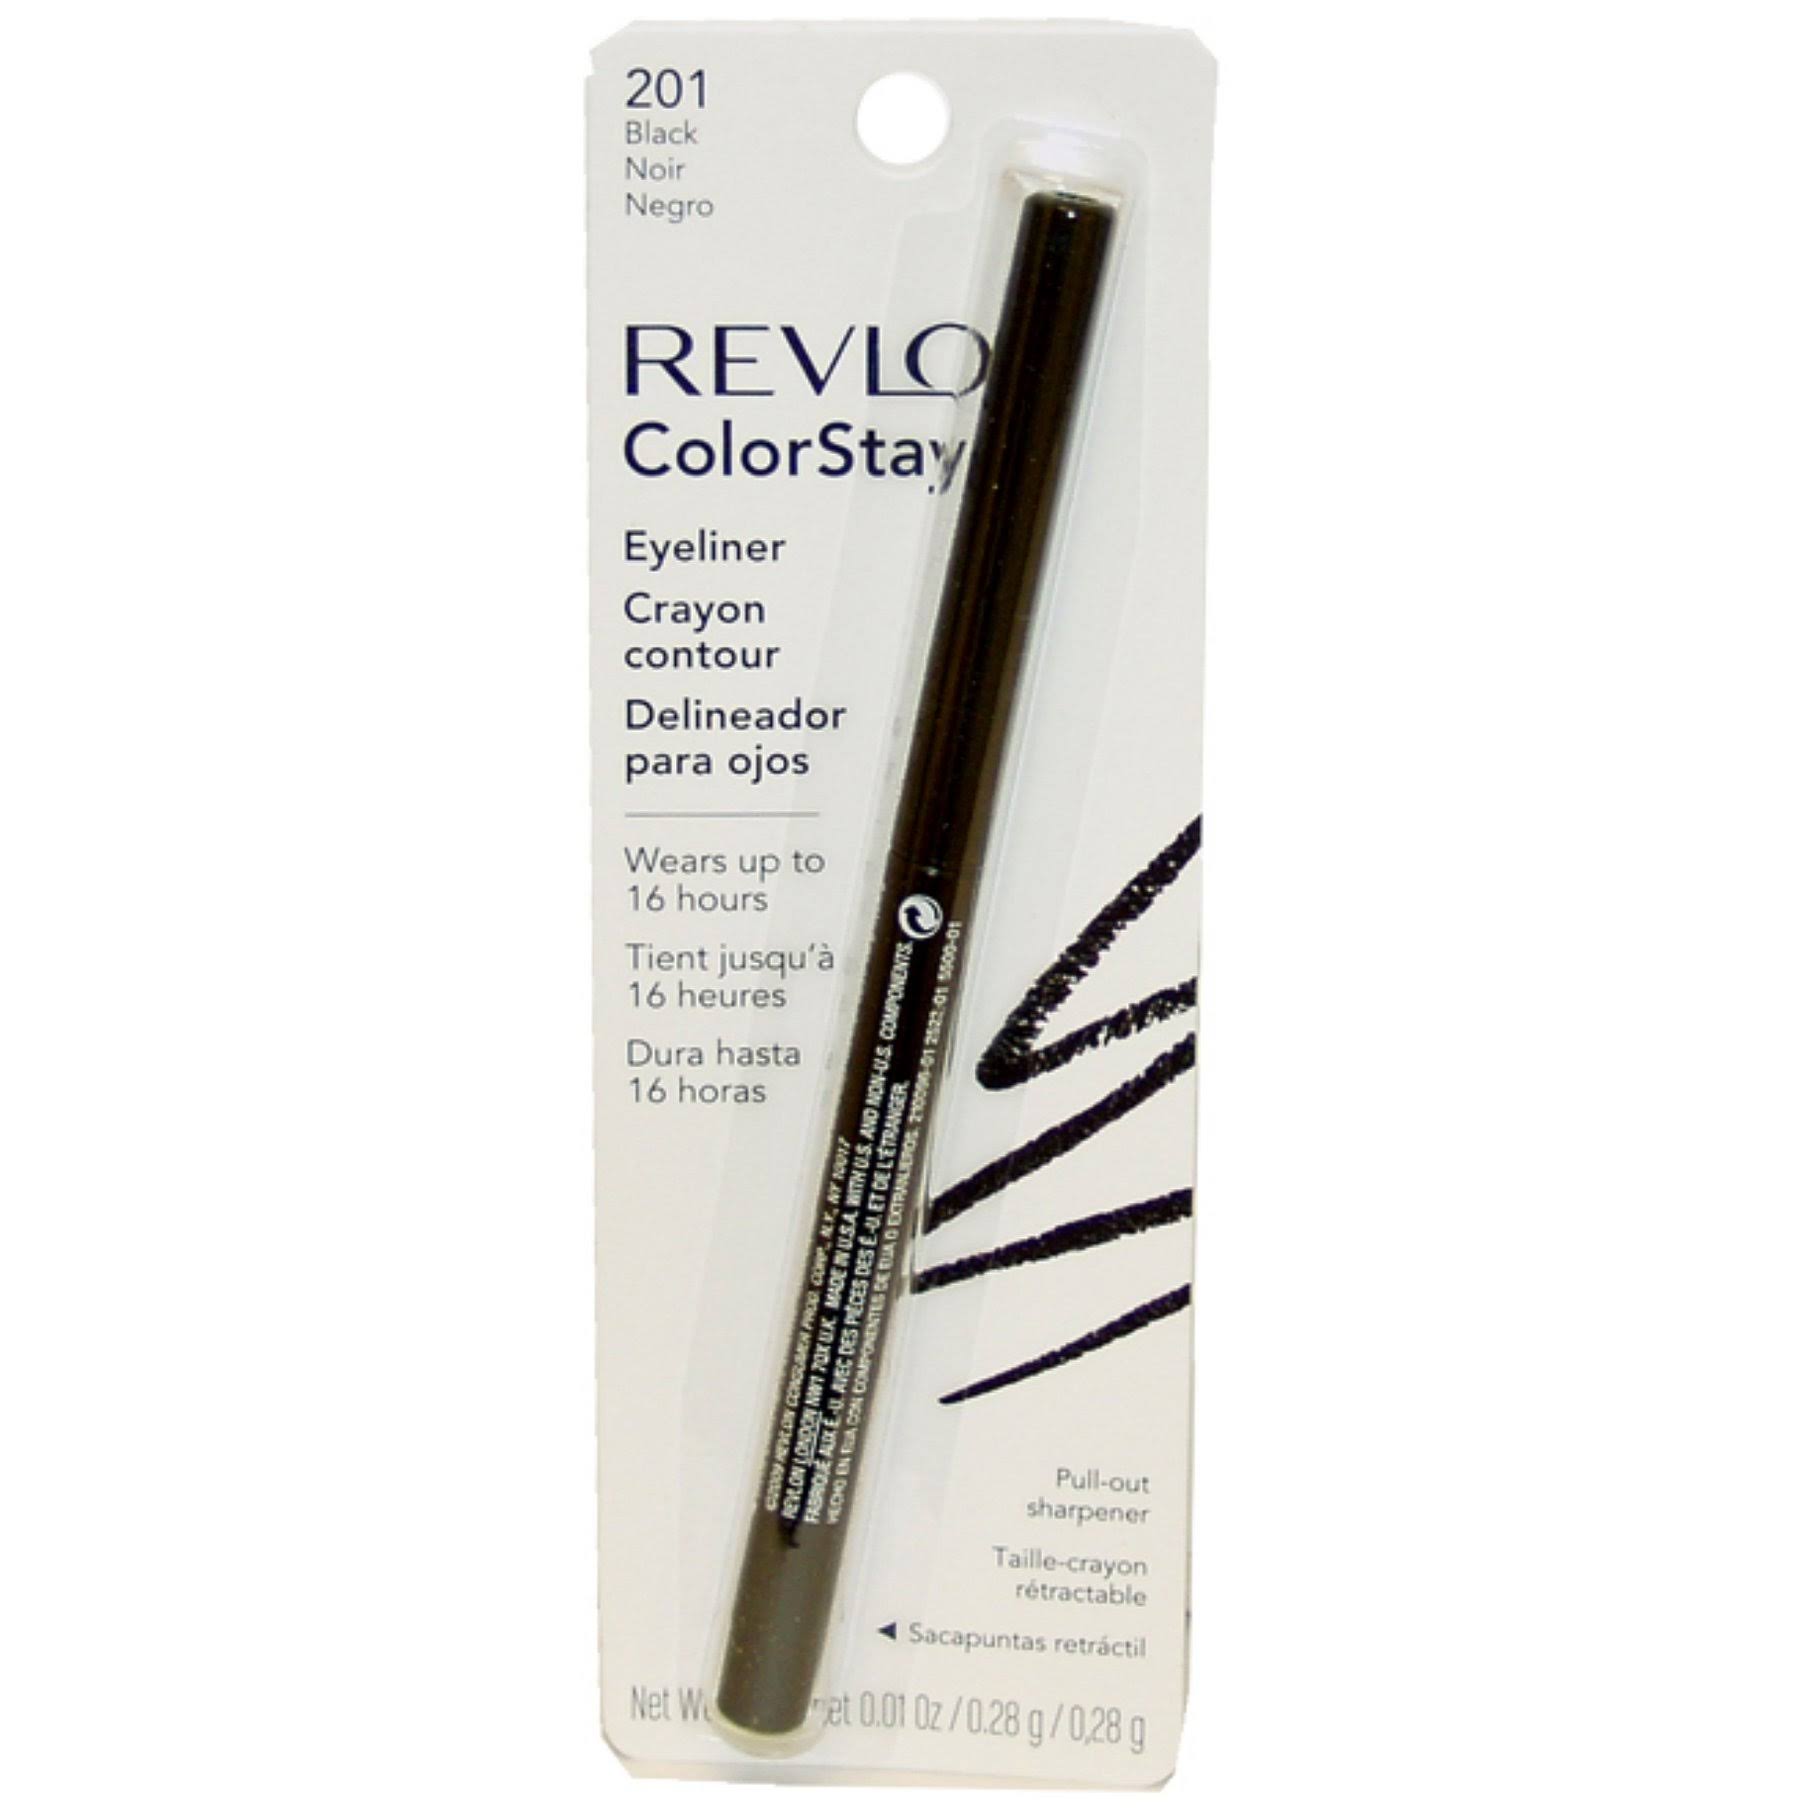 Revlon ColorStay Eyeliner - 201 Black, 0.28g